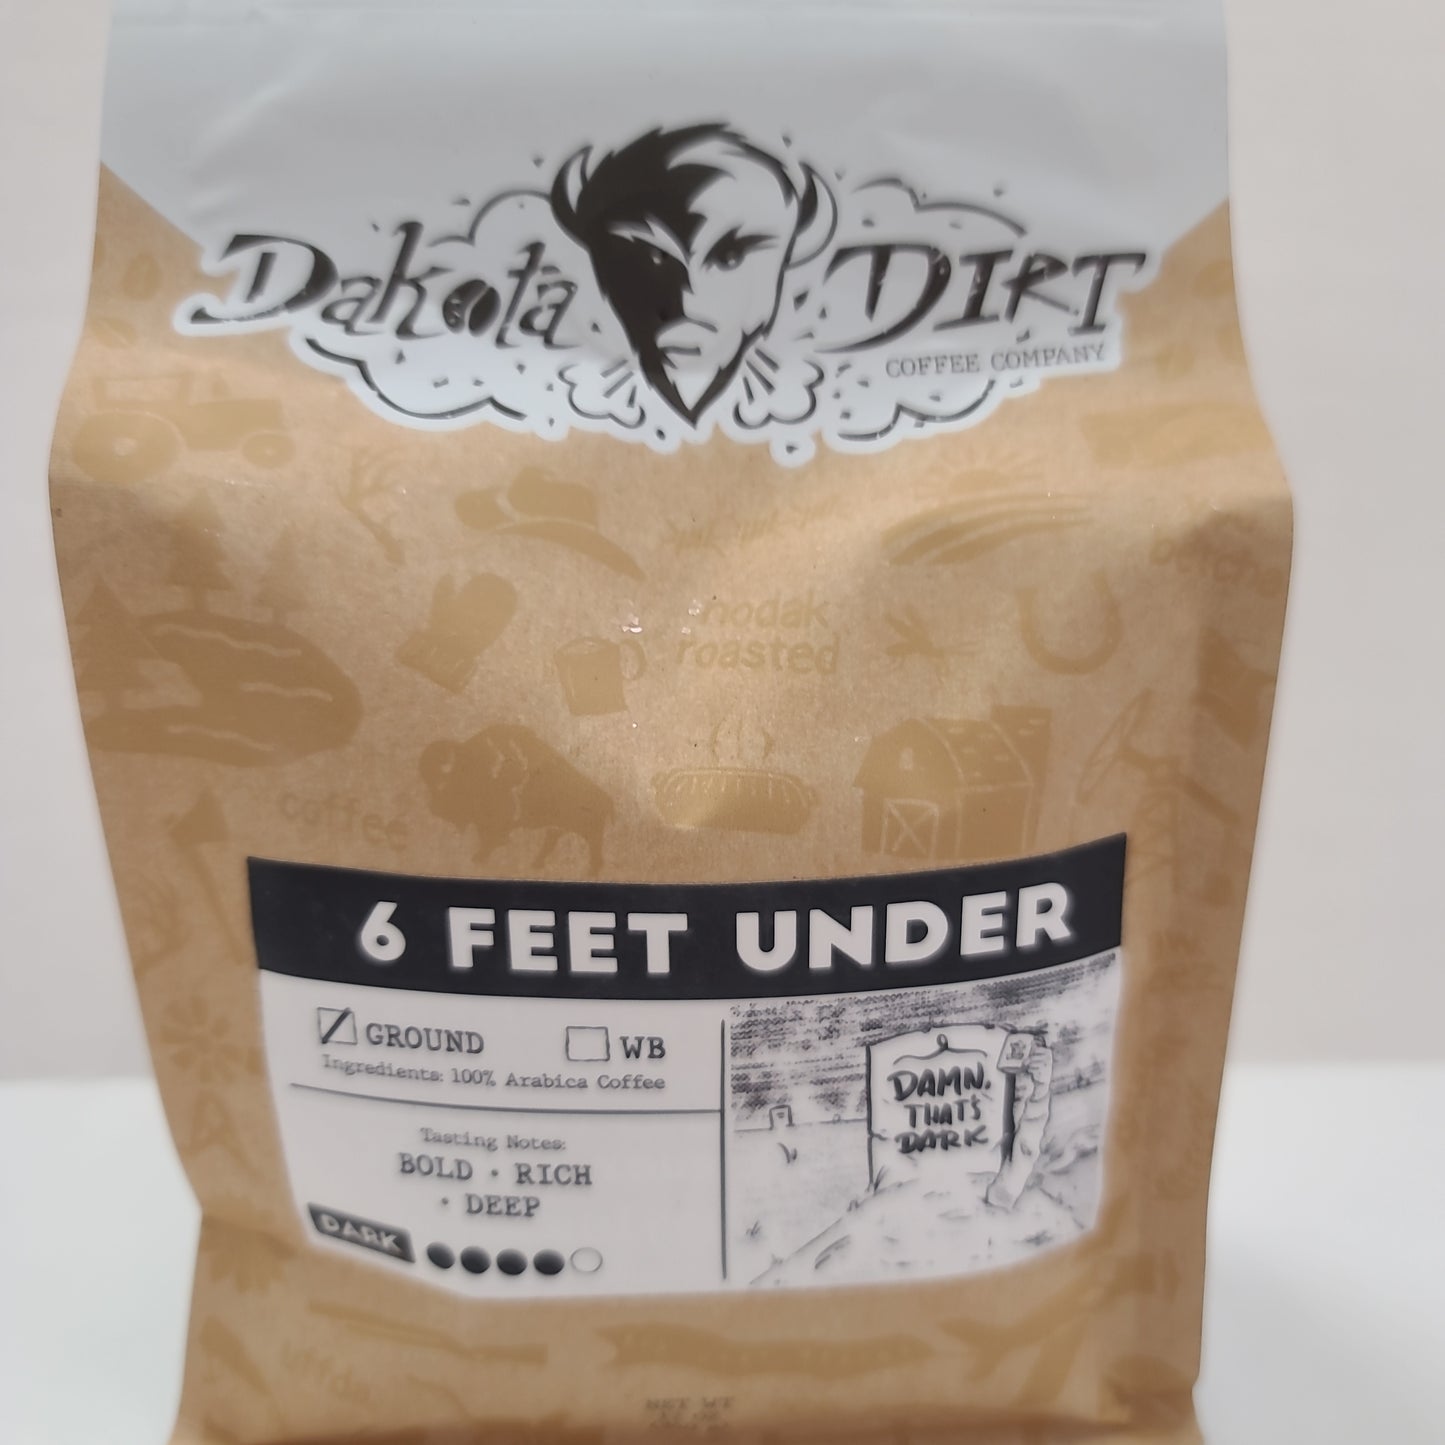 Dakota Dirt Coffee - 6 Feet Under 12oz ground